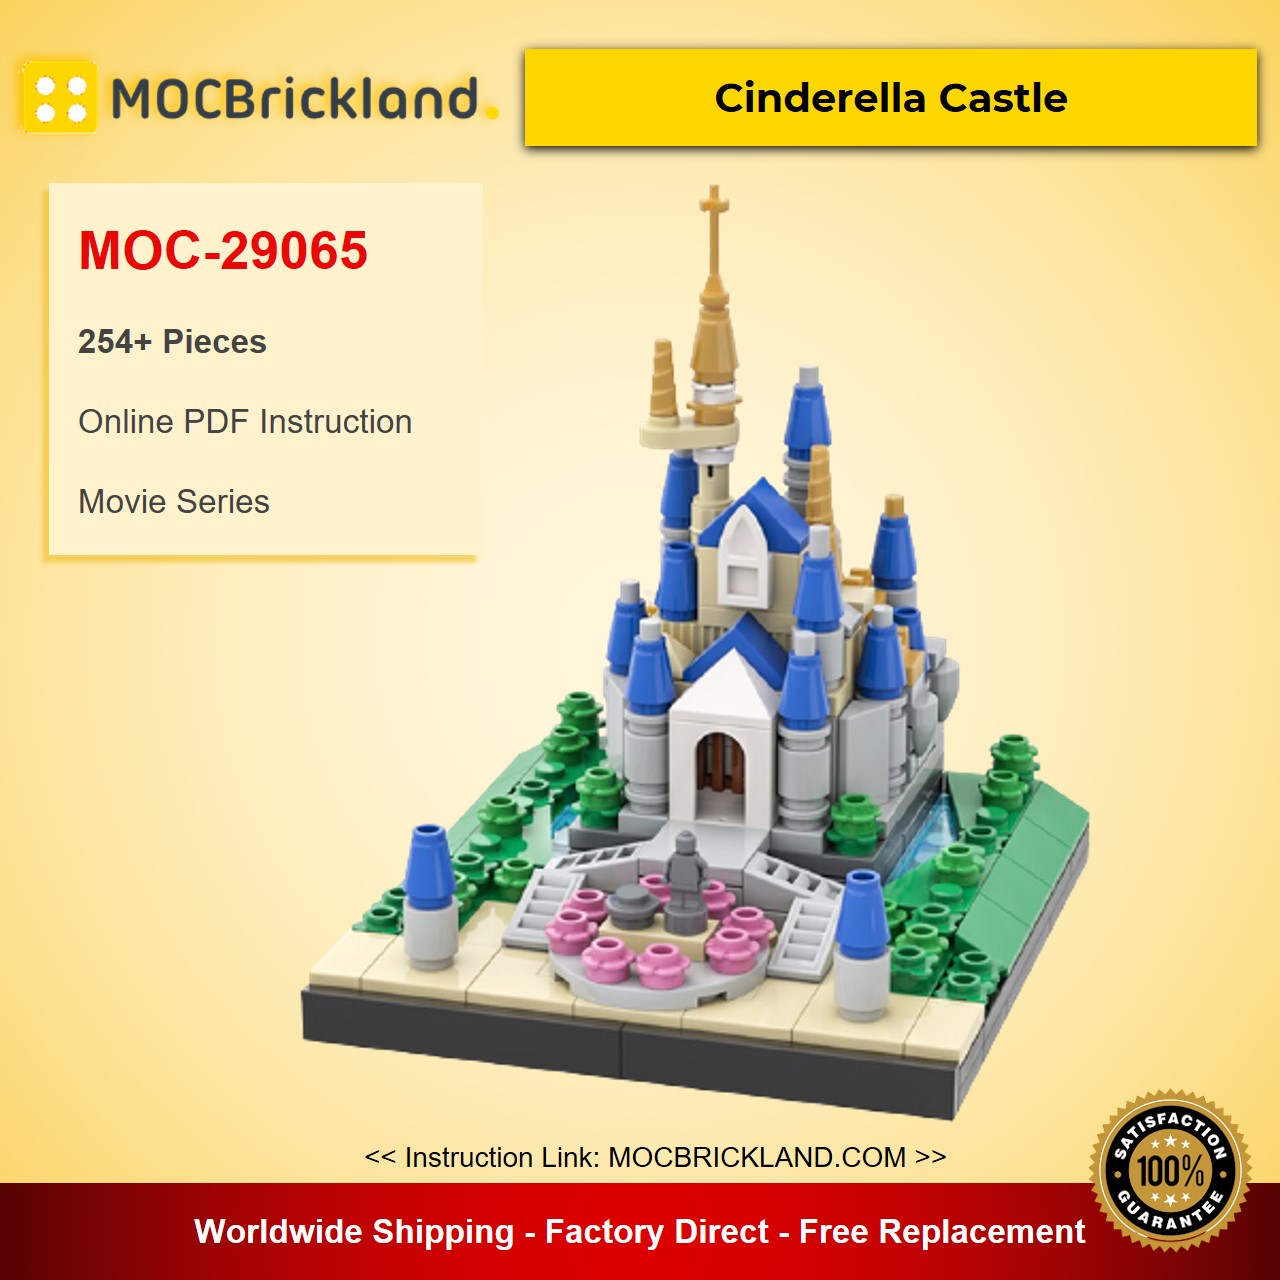 MOCBRICKLAND MOC-29065 Cinderella Castle